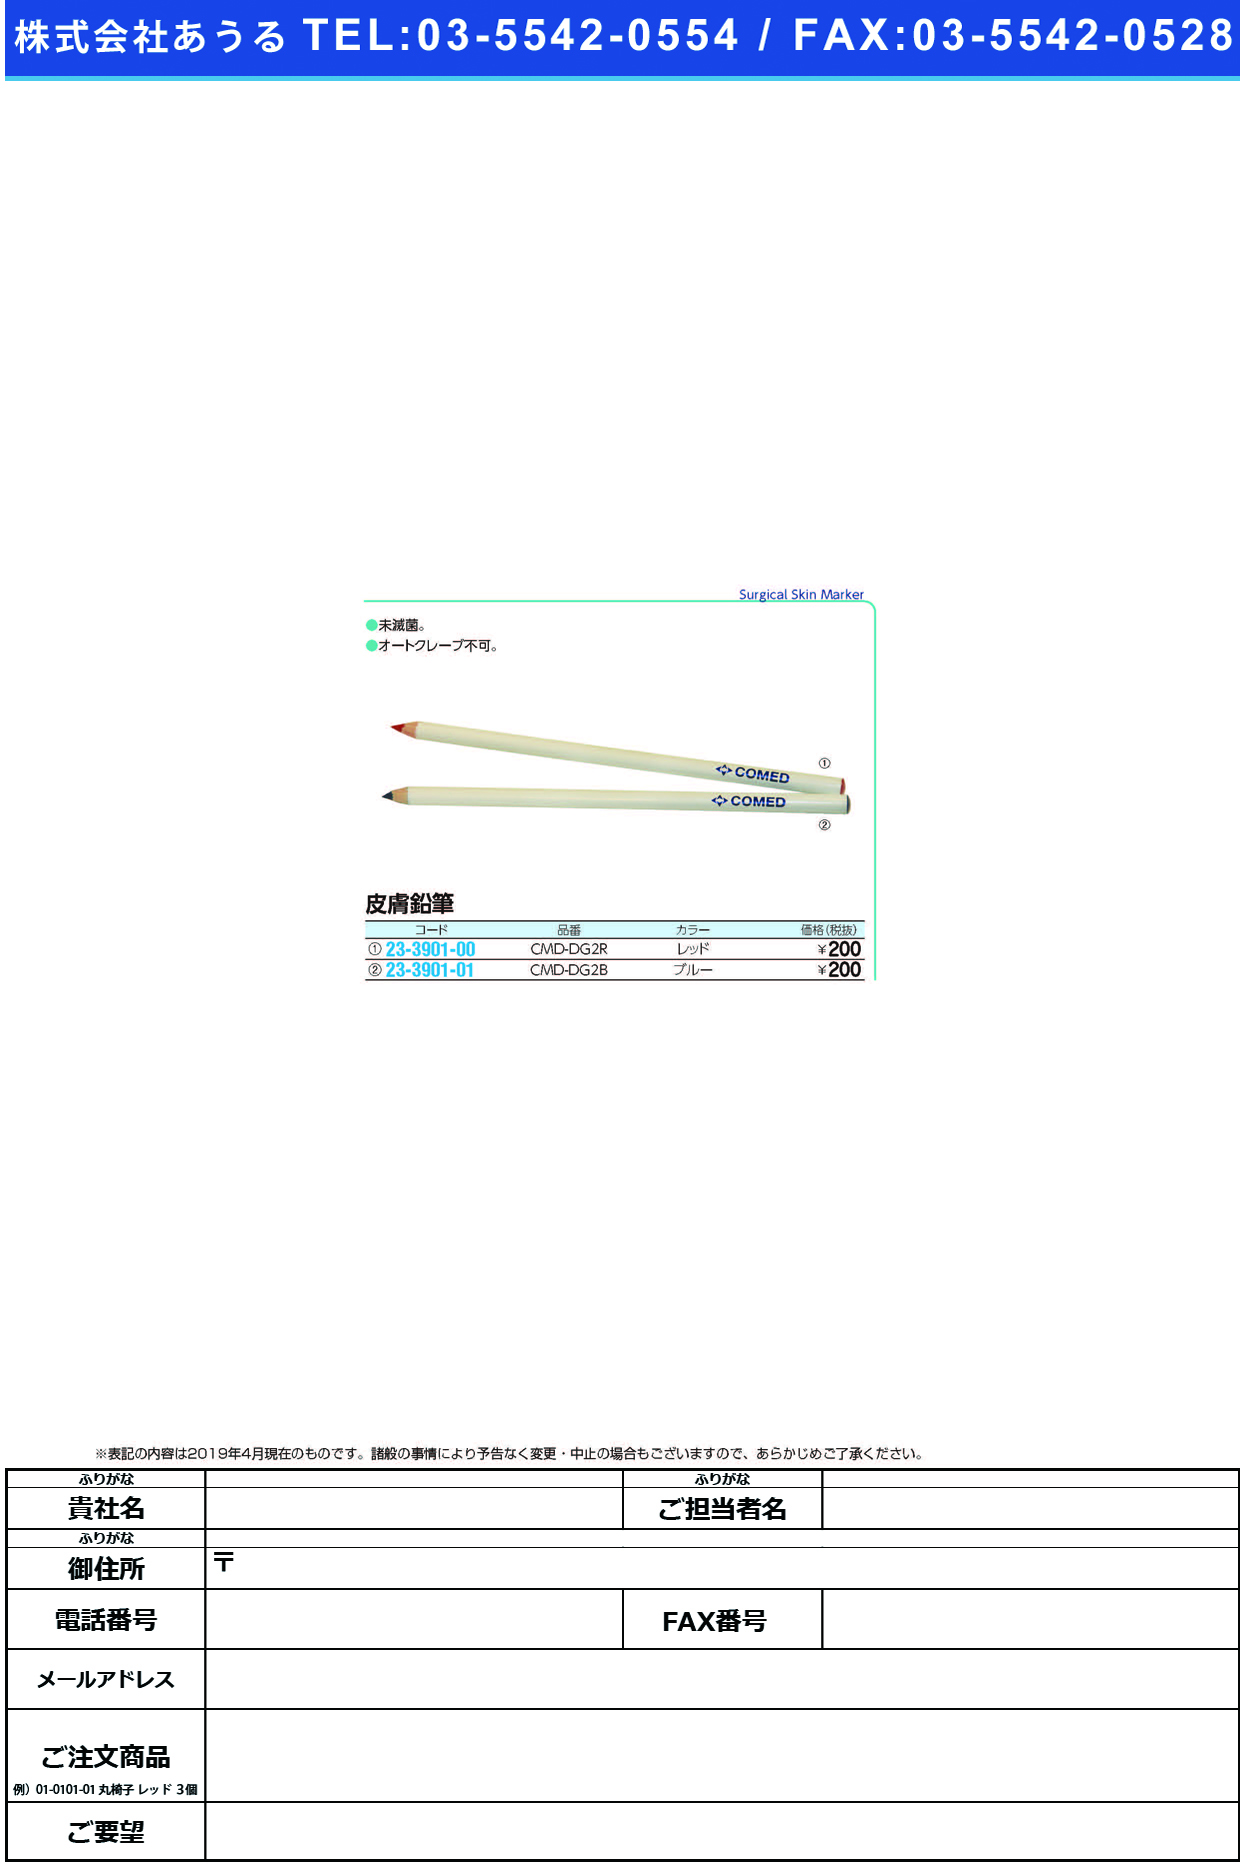 (23-3901-00)皮膚鉛筆 CMD-DG2R(ﾚｯﾄﾞ) ﾋﾌﾏｰｶｰ【1本単位】【2019年カタログ商品】